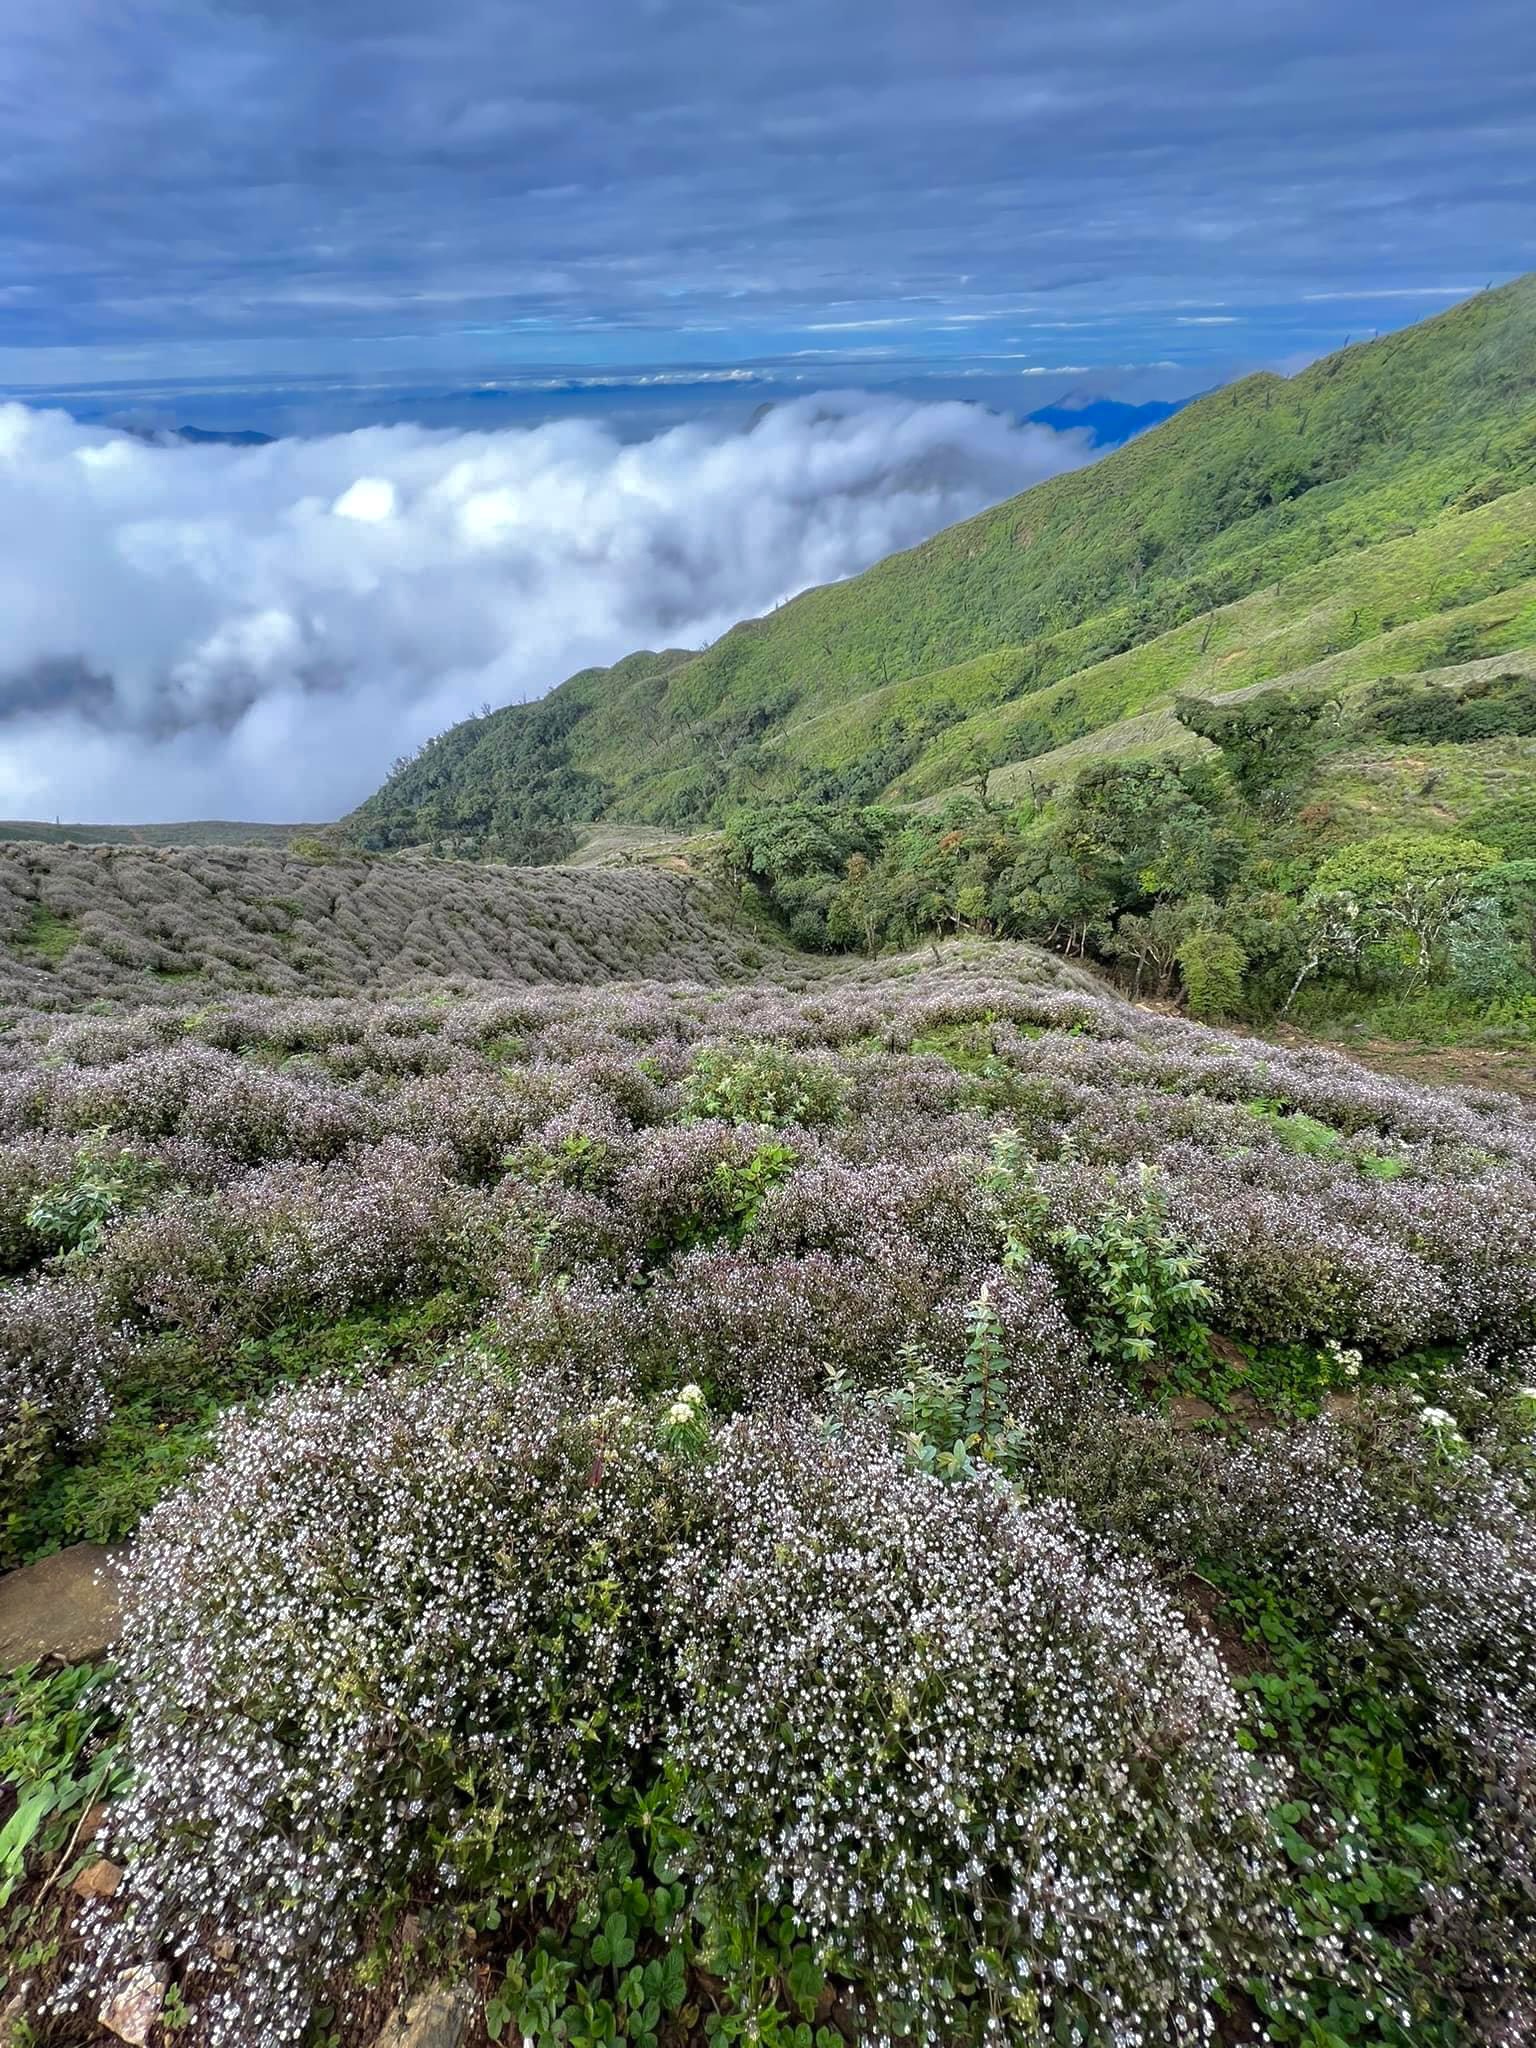 Săn mây vào mùa hoa tím Chi Pâu trên ngọn núi Tà Chì Nhù – Yên Bái 4